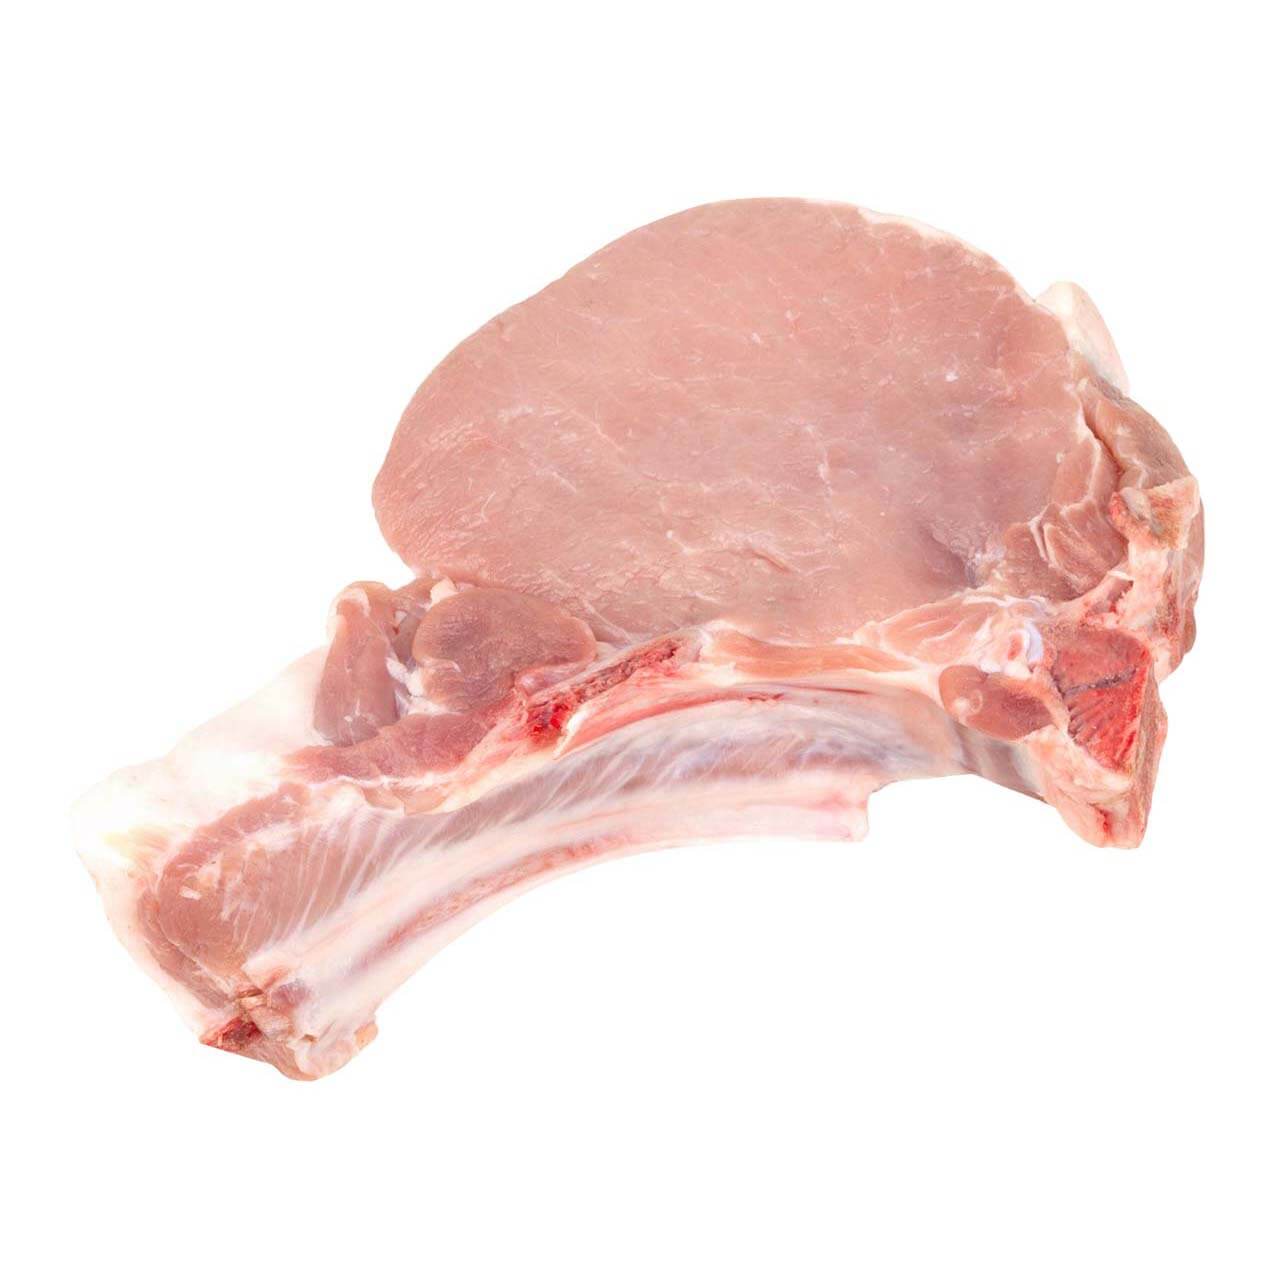 Pork Chops - Bone-In Center Cut - 8 oz. - Organic